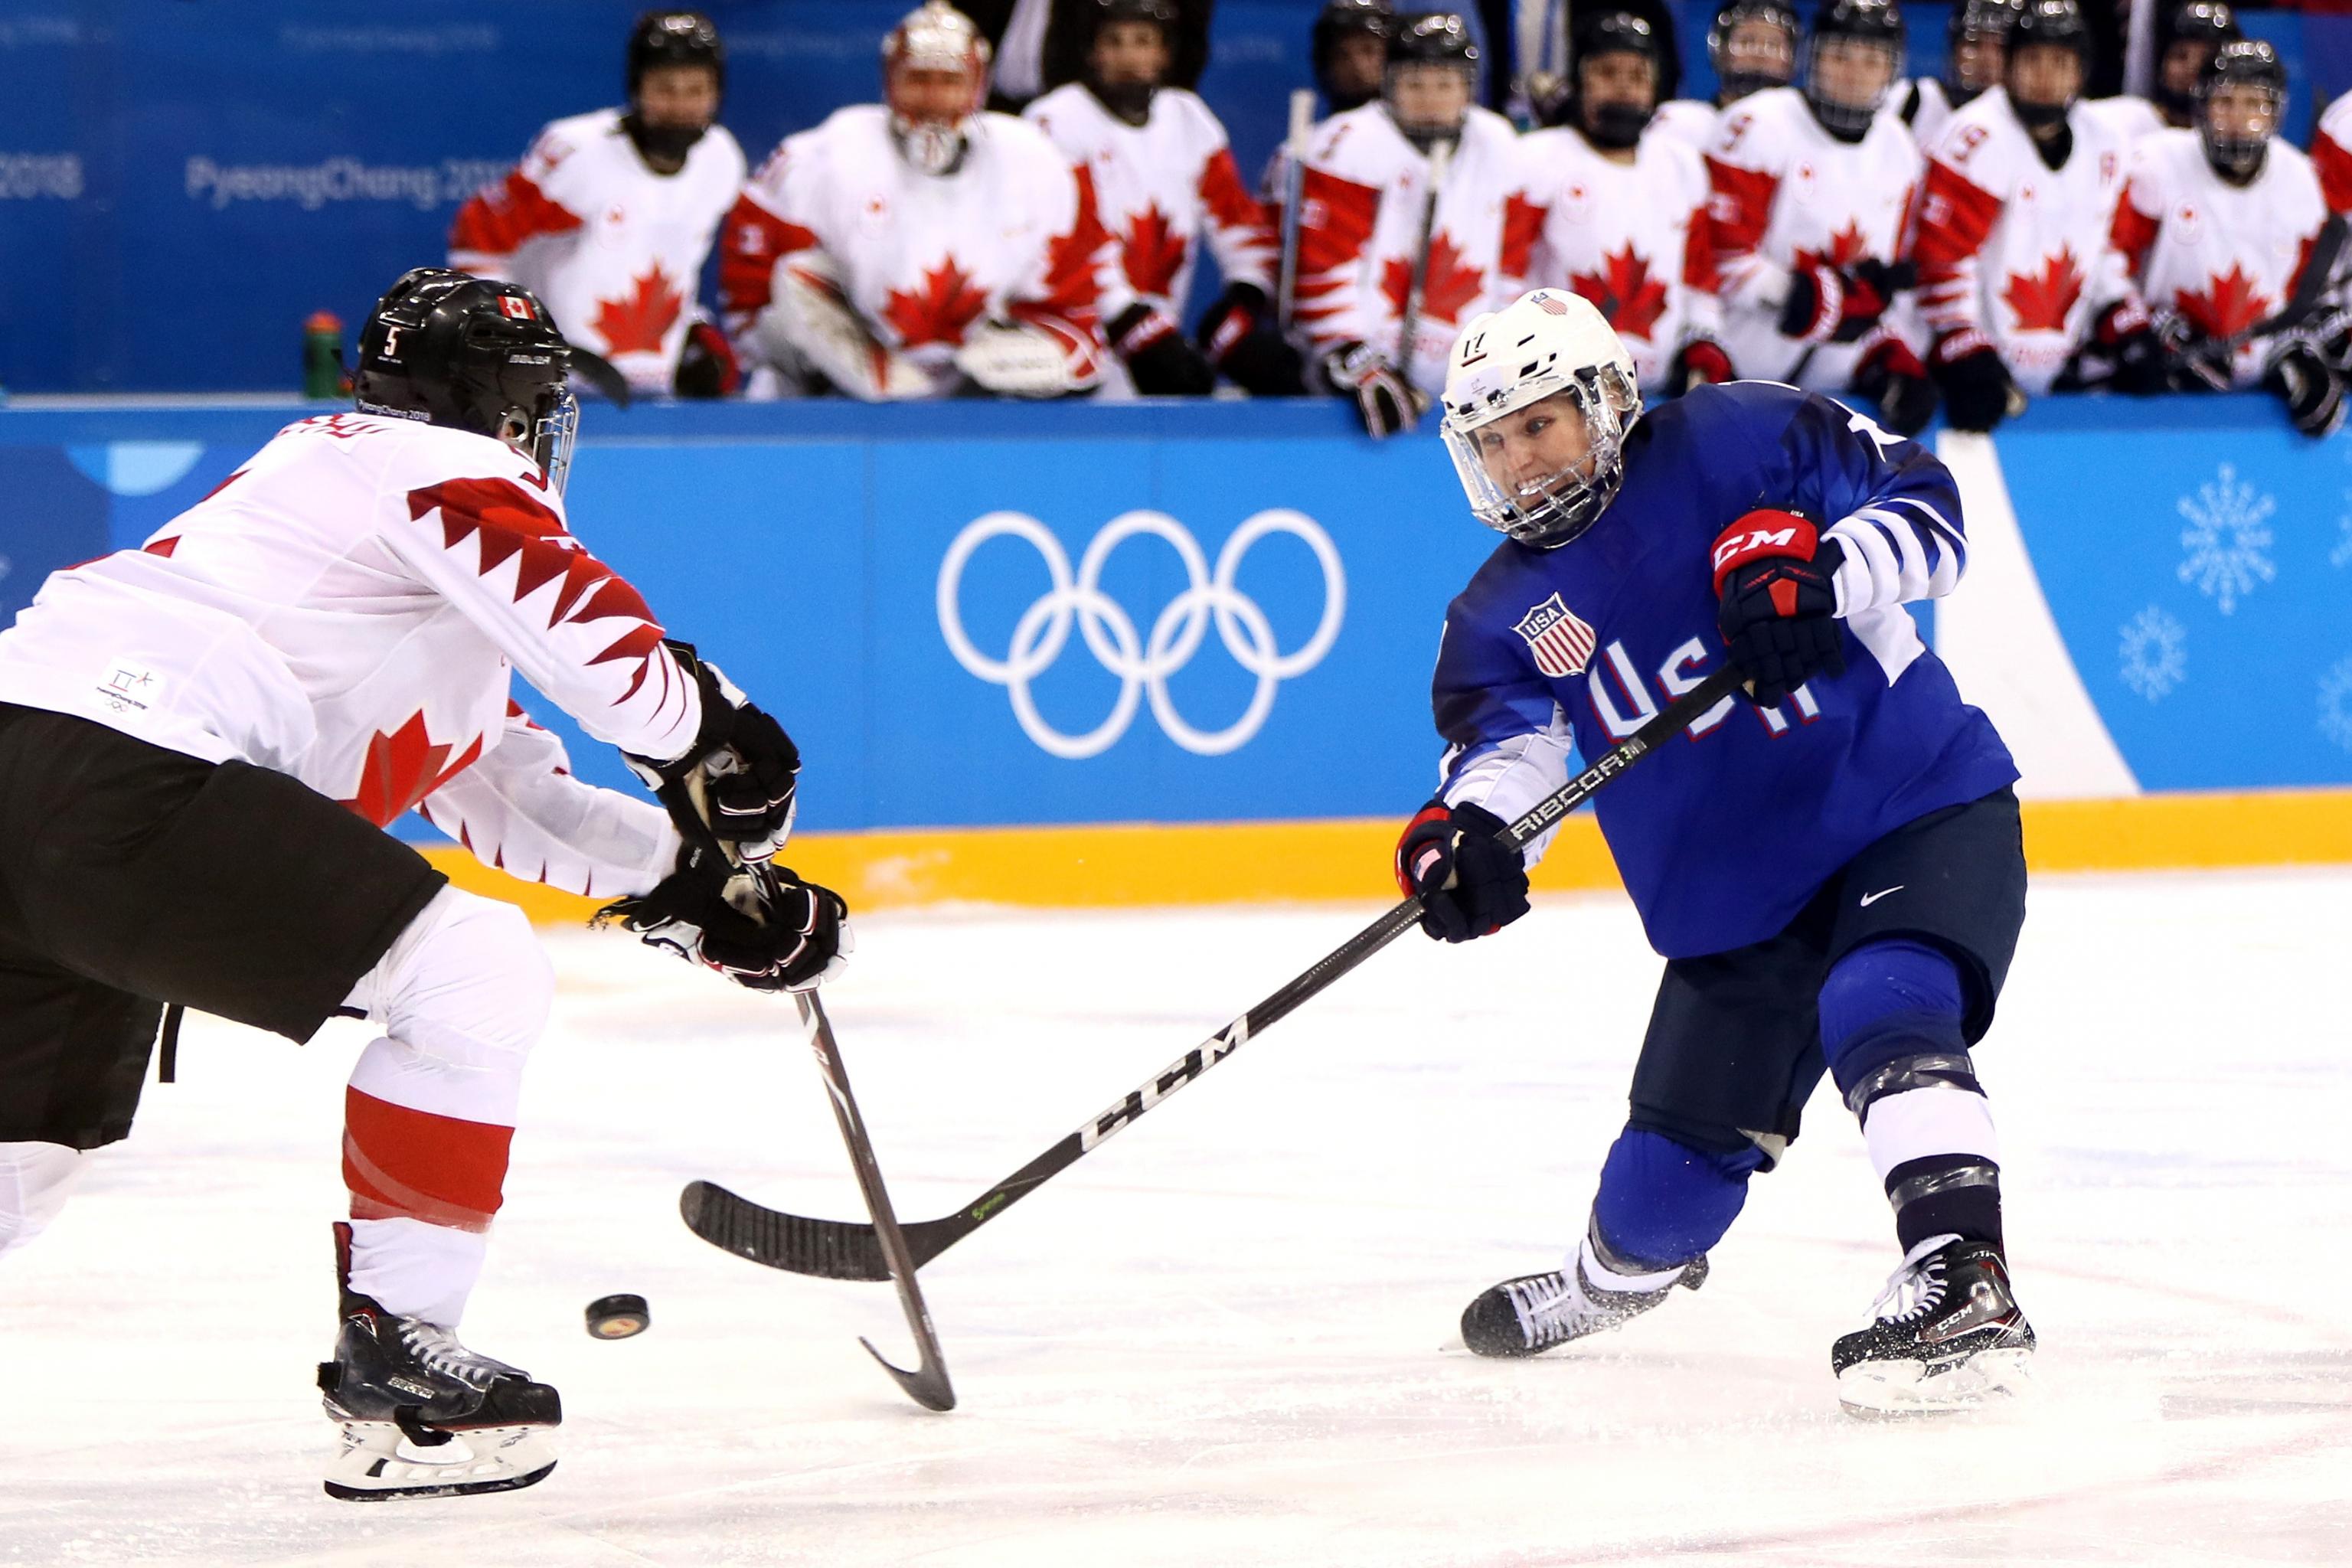 Pyeongchang 2018: Canada loses shot at men's hockey gold, medal haul hits  national record - The Globe and Mail